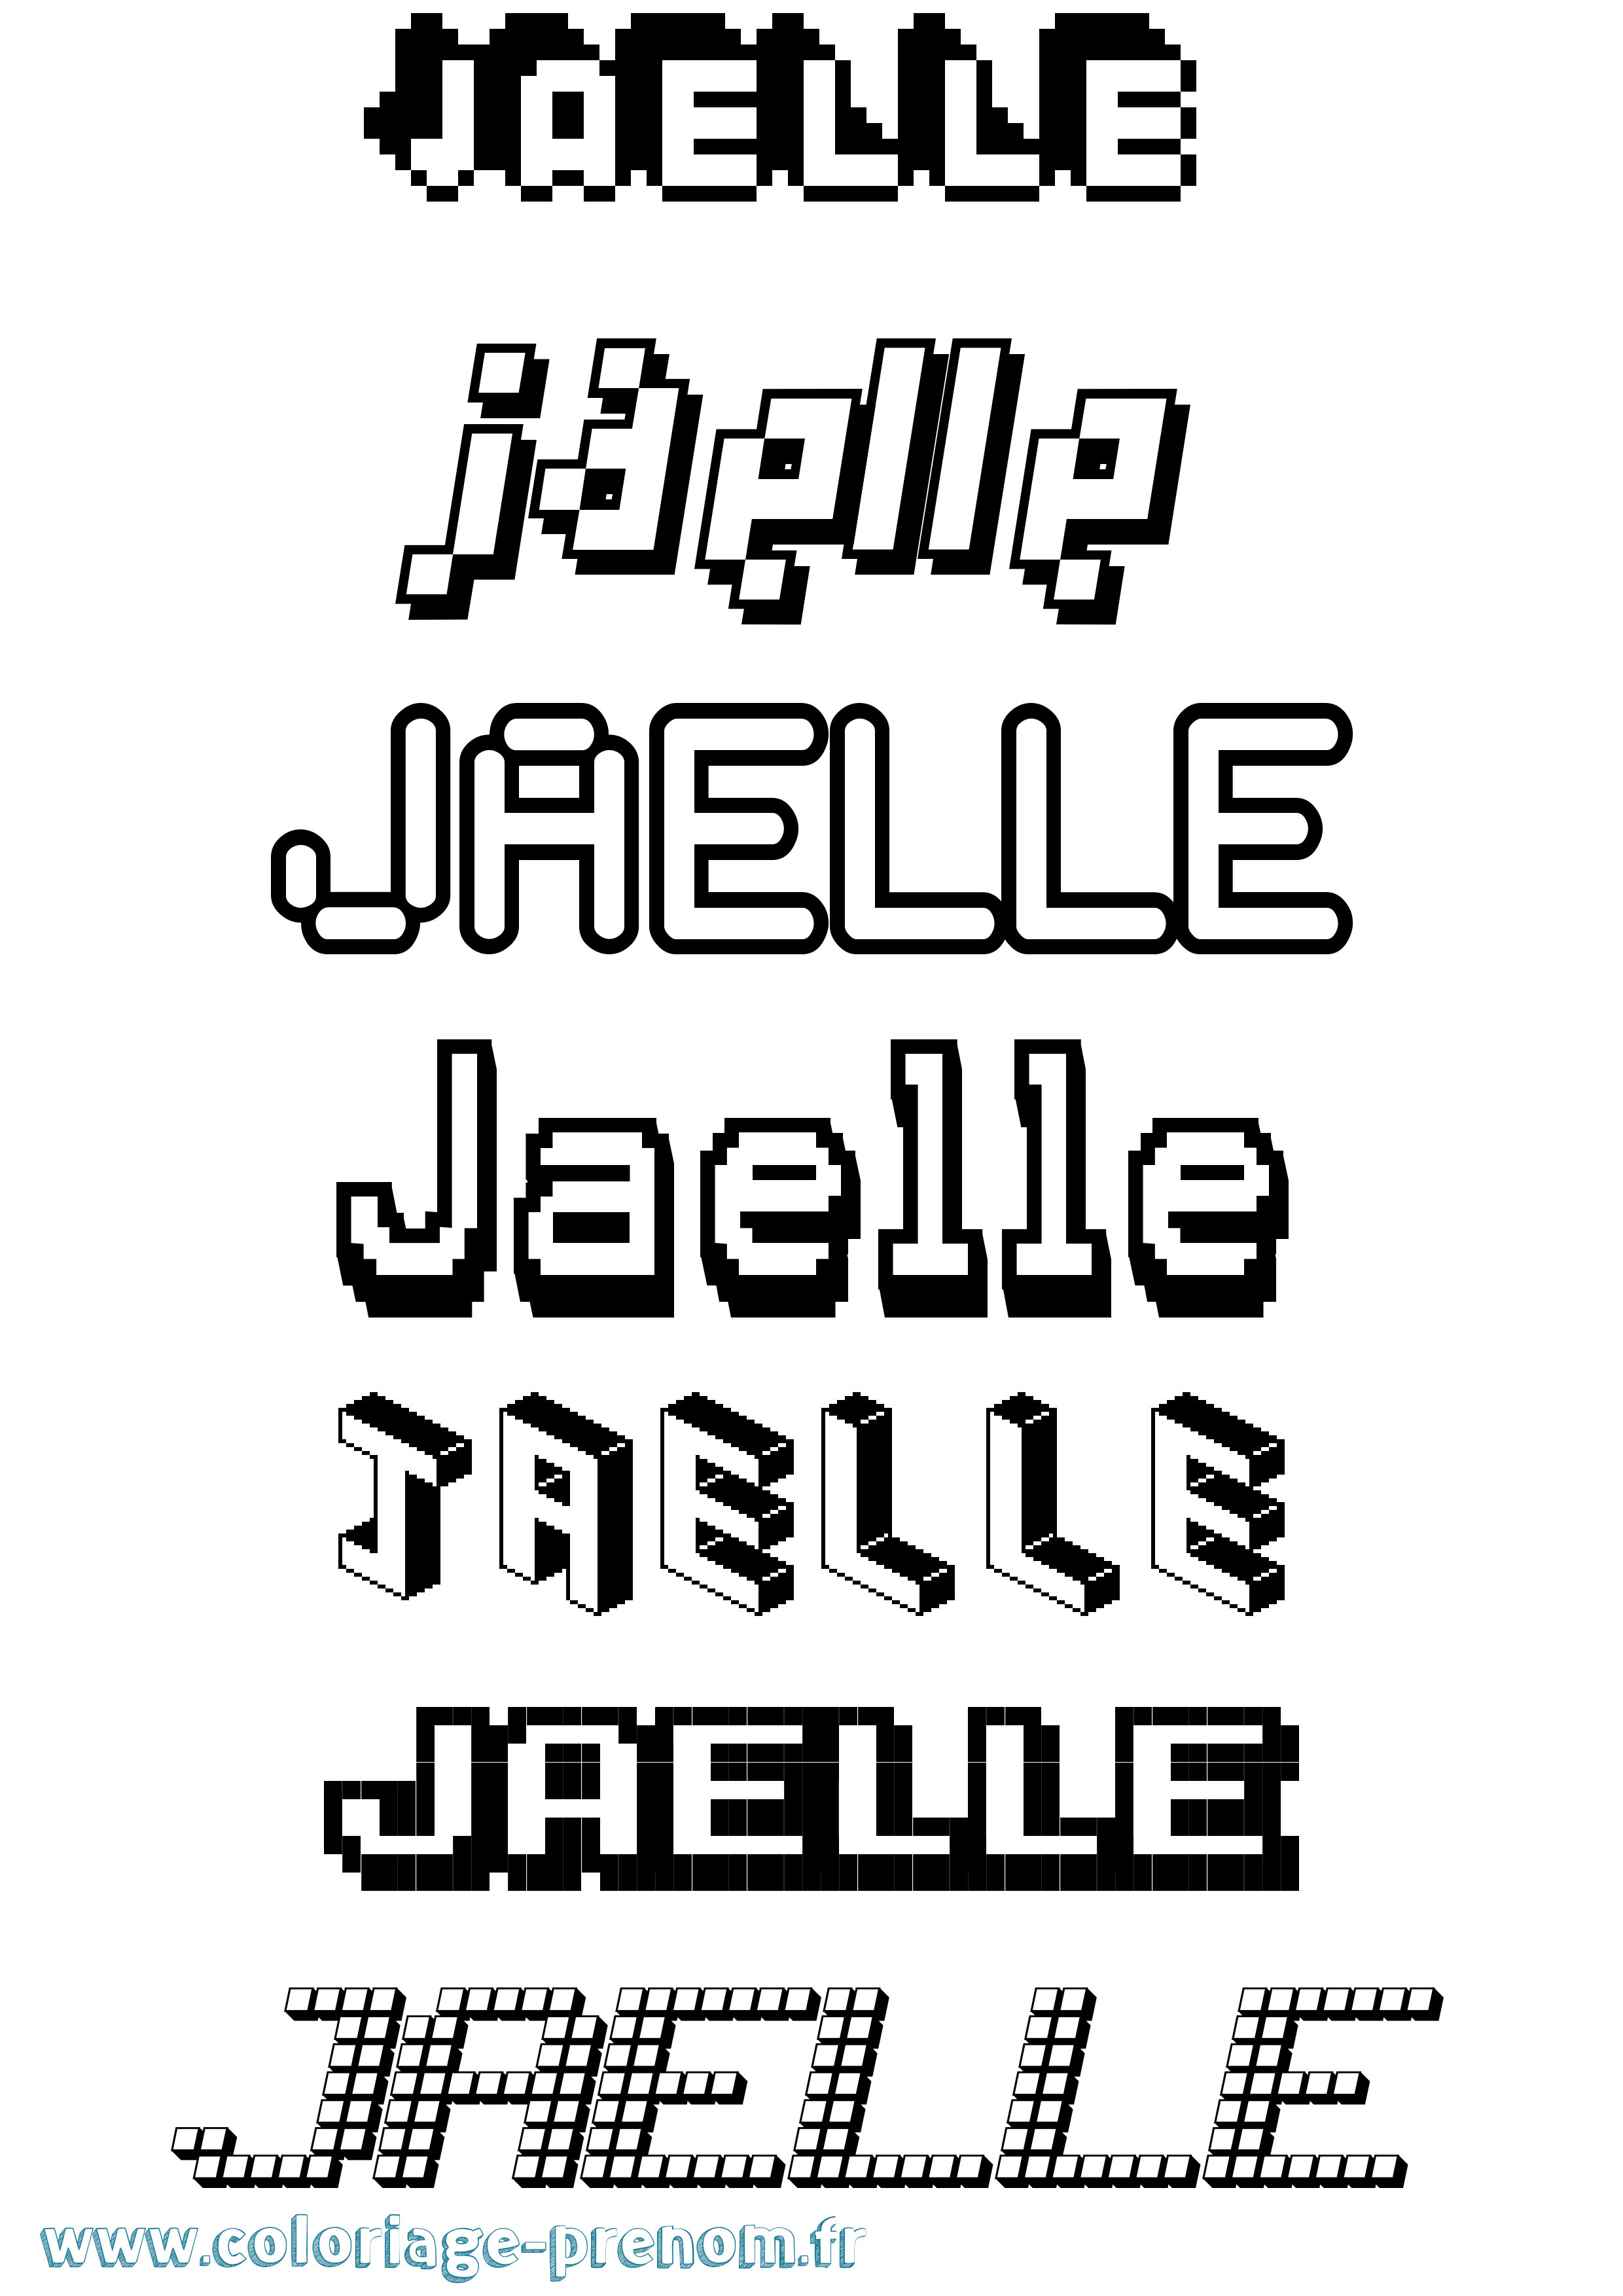 Coloriage prénom Jaelle Pixel